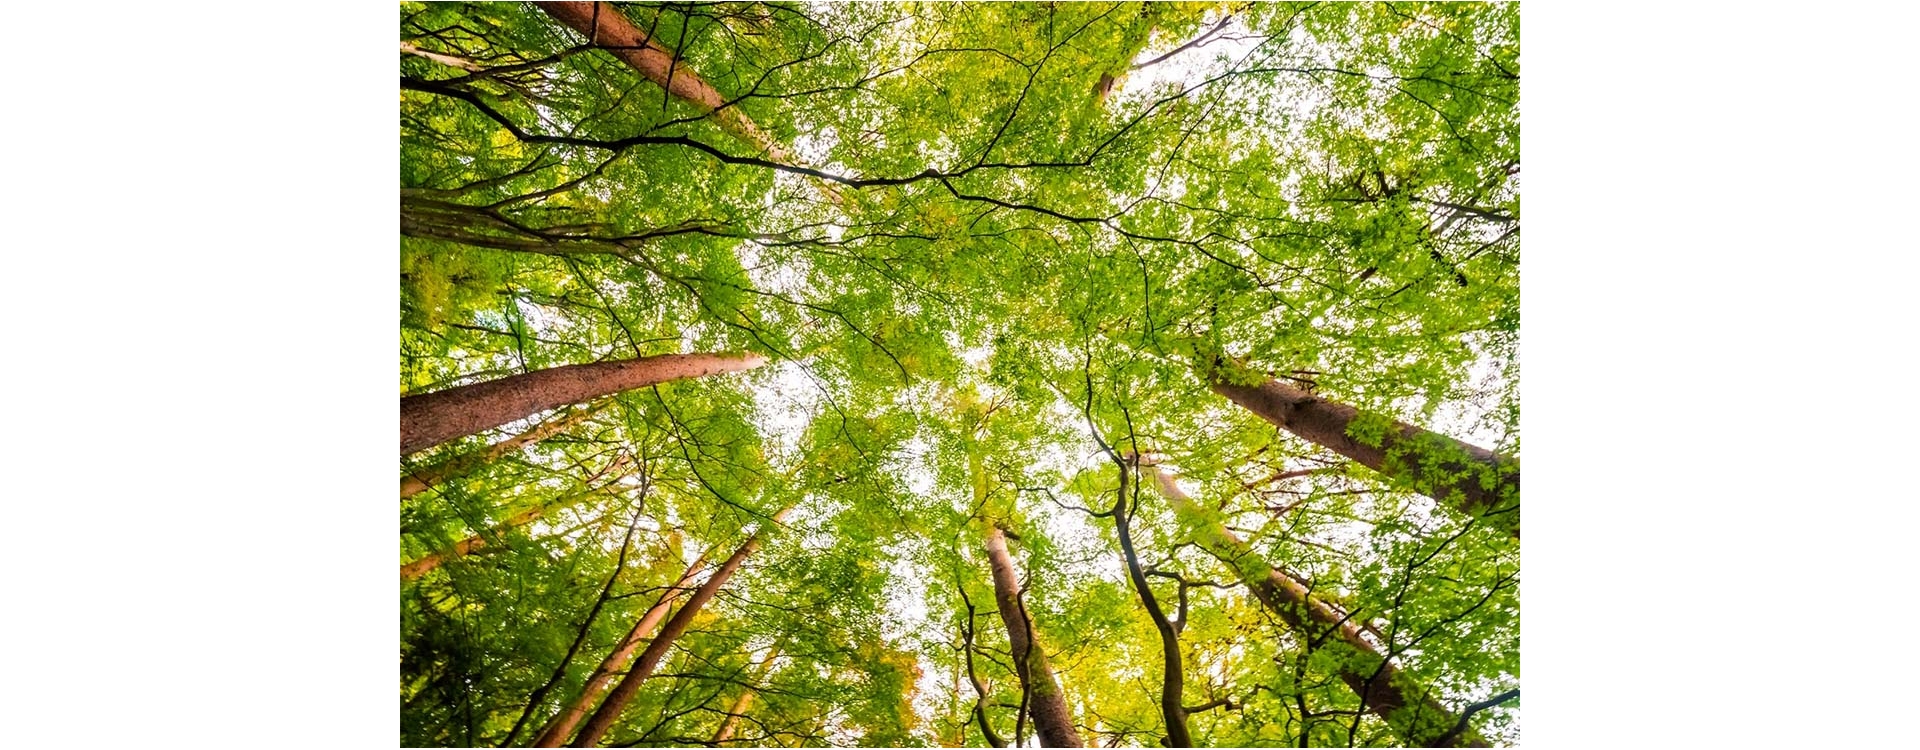 Piantare alberi per un mondo più pulito, sano e sostenibile